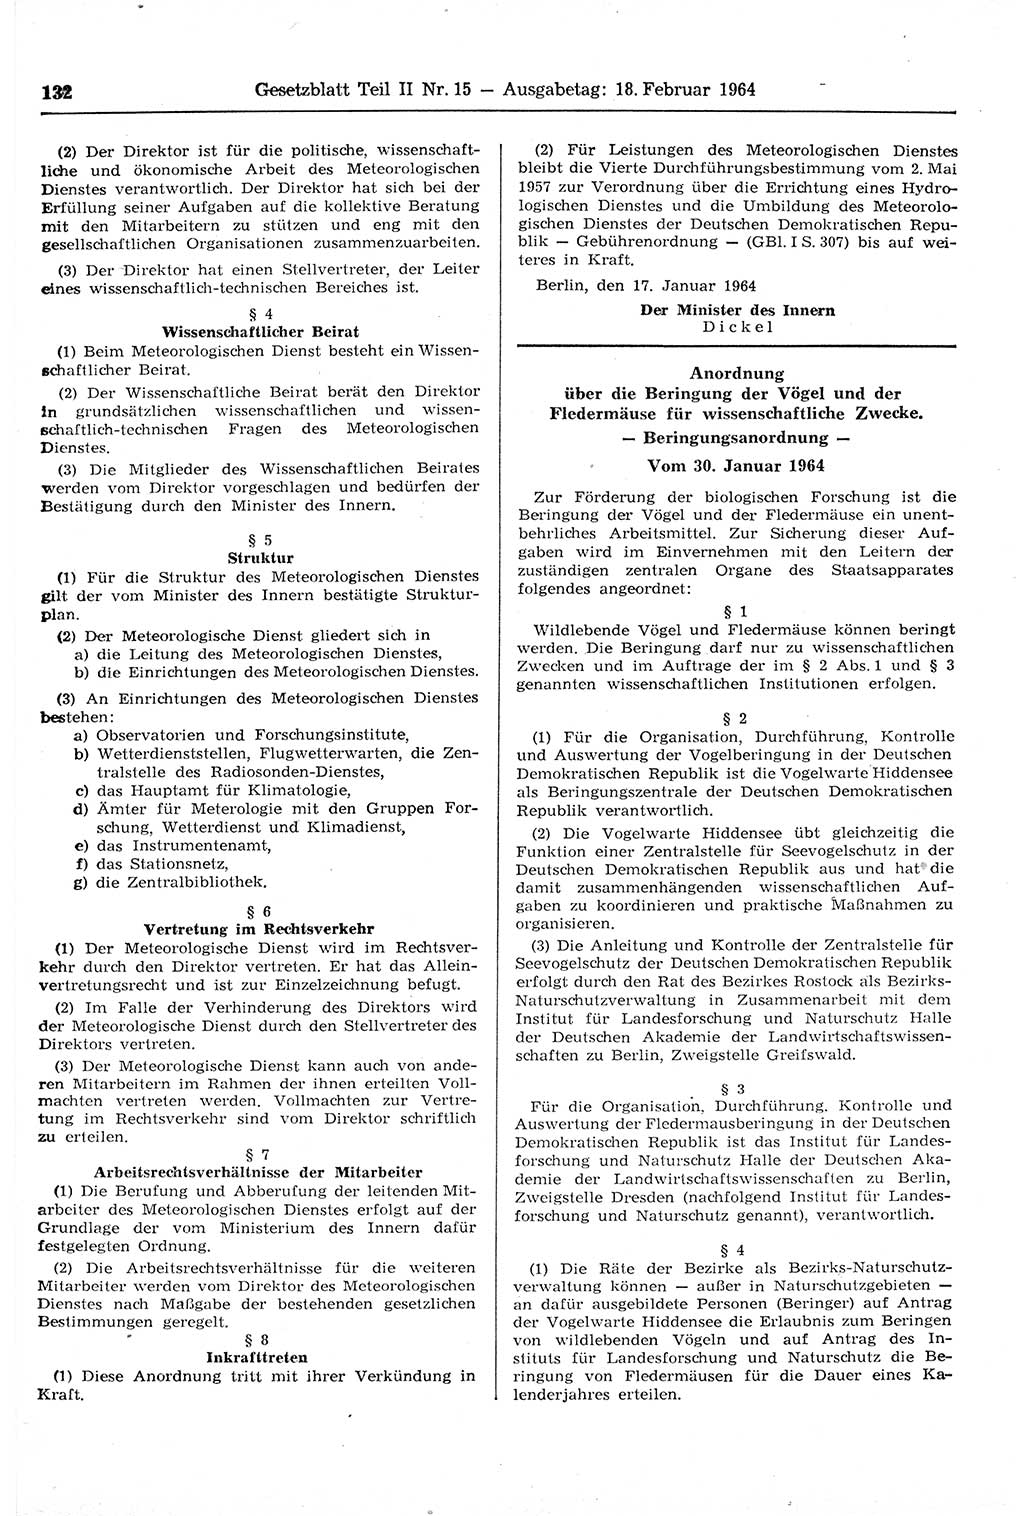 Gesetzblatt (GBl.) der Deutschen Demokratischen Republik (DDR) Teil ⅠⅠ 1964, Seite 132 (GBl. DDR ⅠⅠ 1964, S. 132)